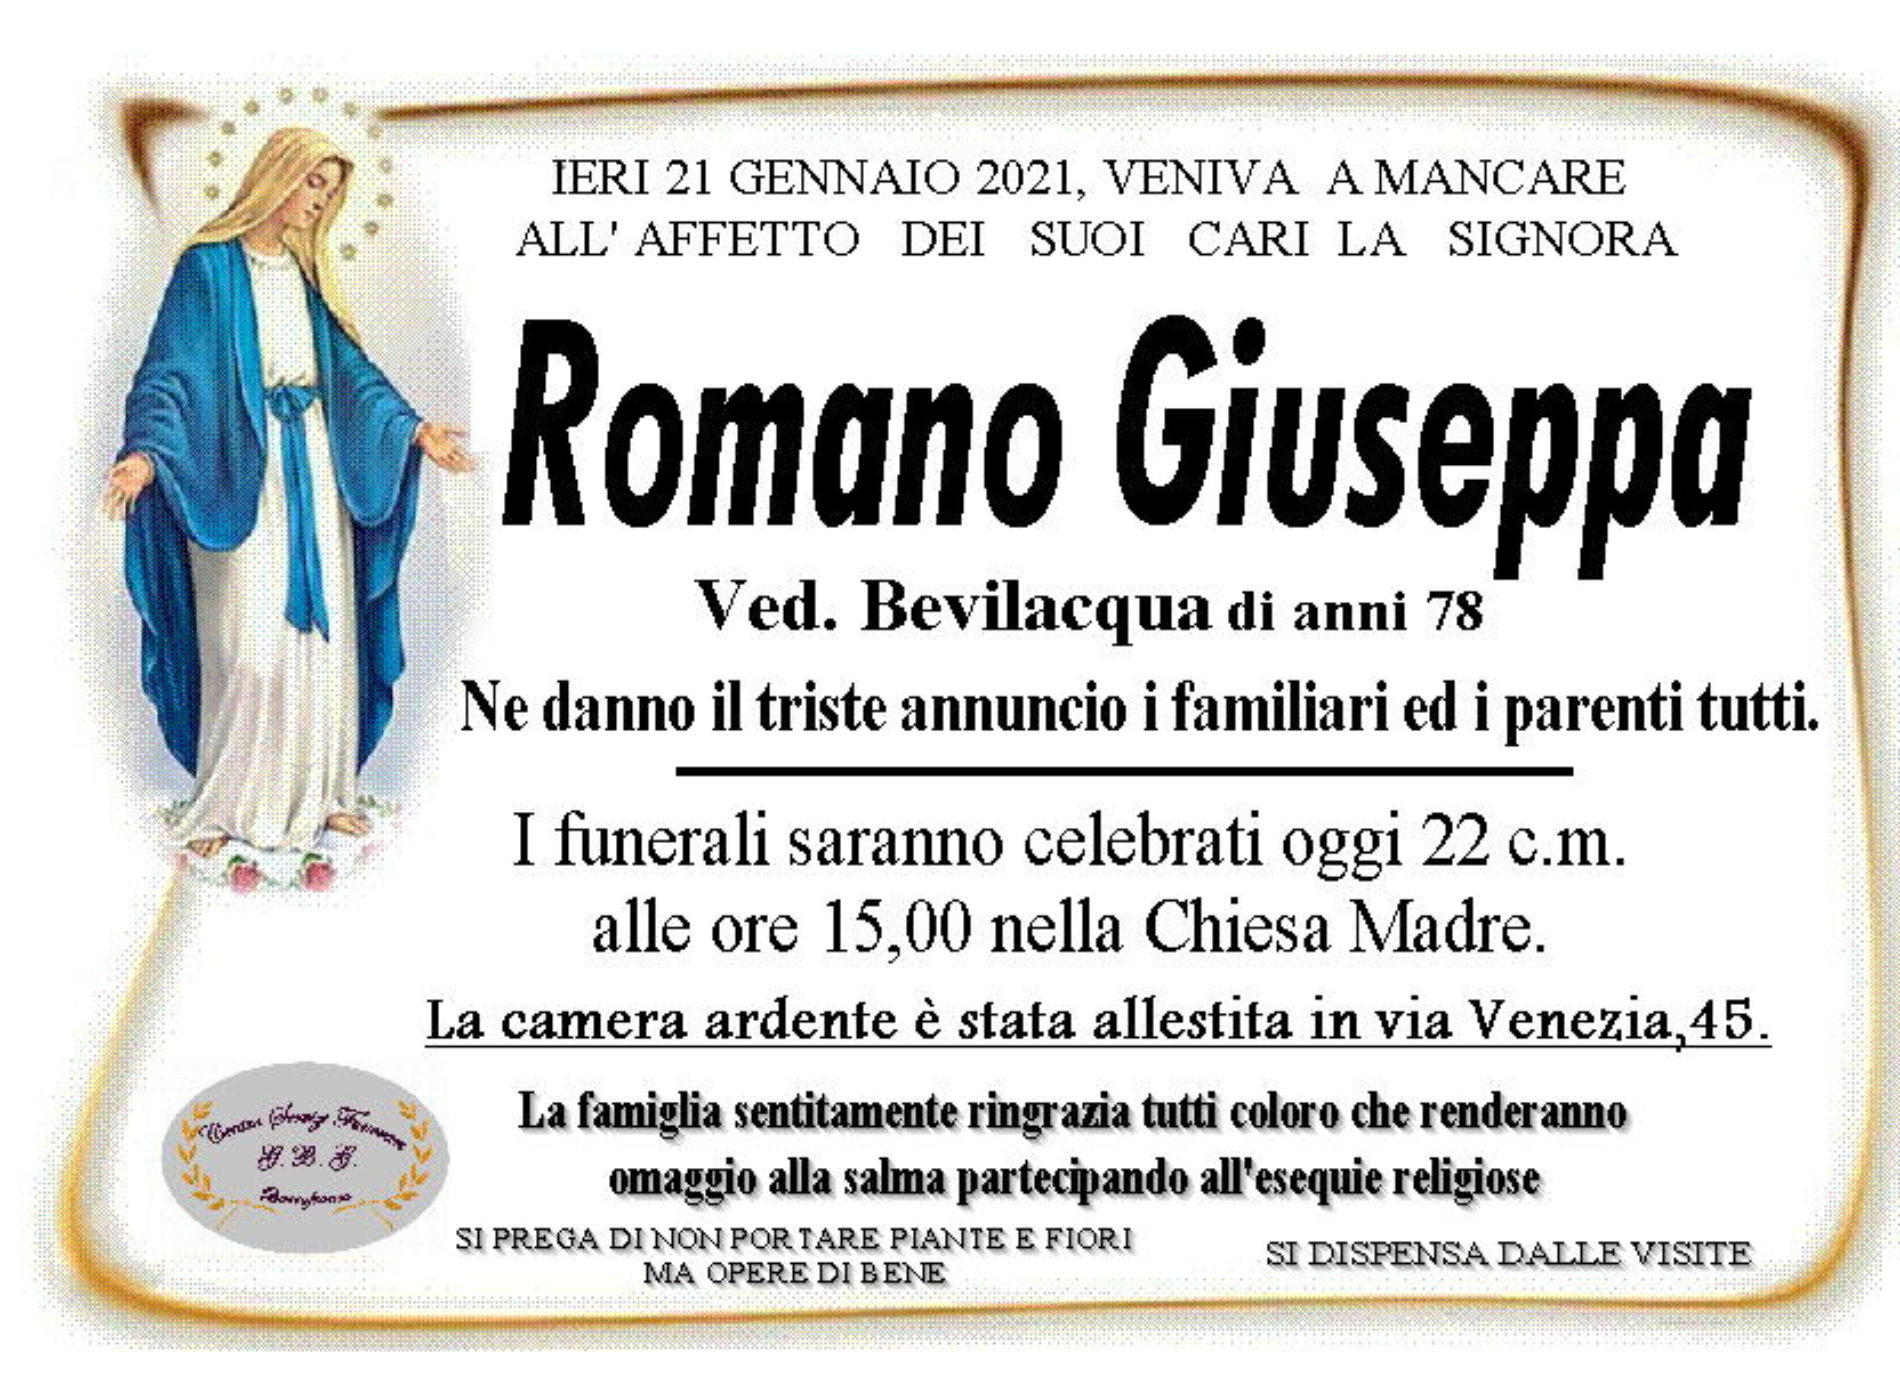 Annuncio servizi funerari agenzia G.B.G. sig.ra Romano Giuseppa ved. Bevilacqua di anni 78